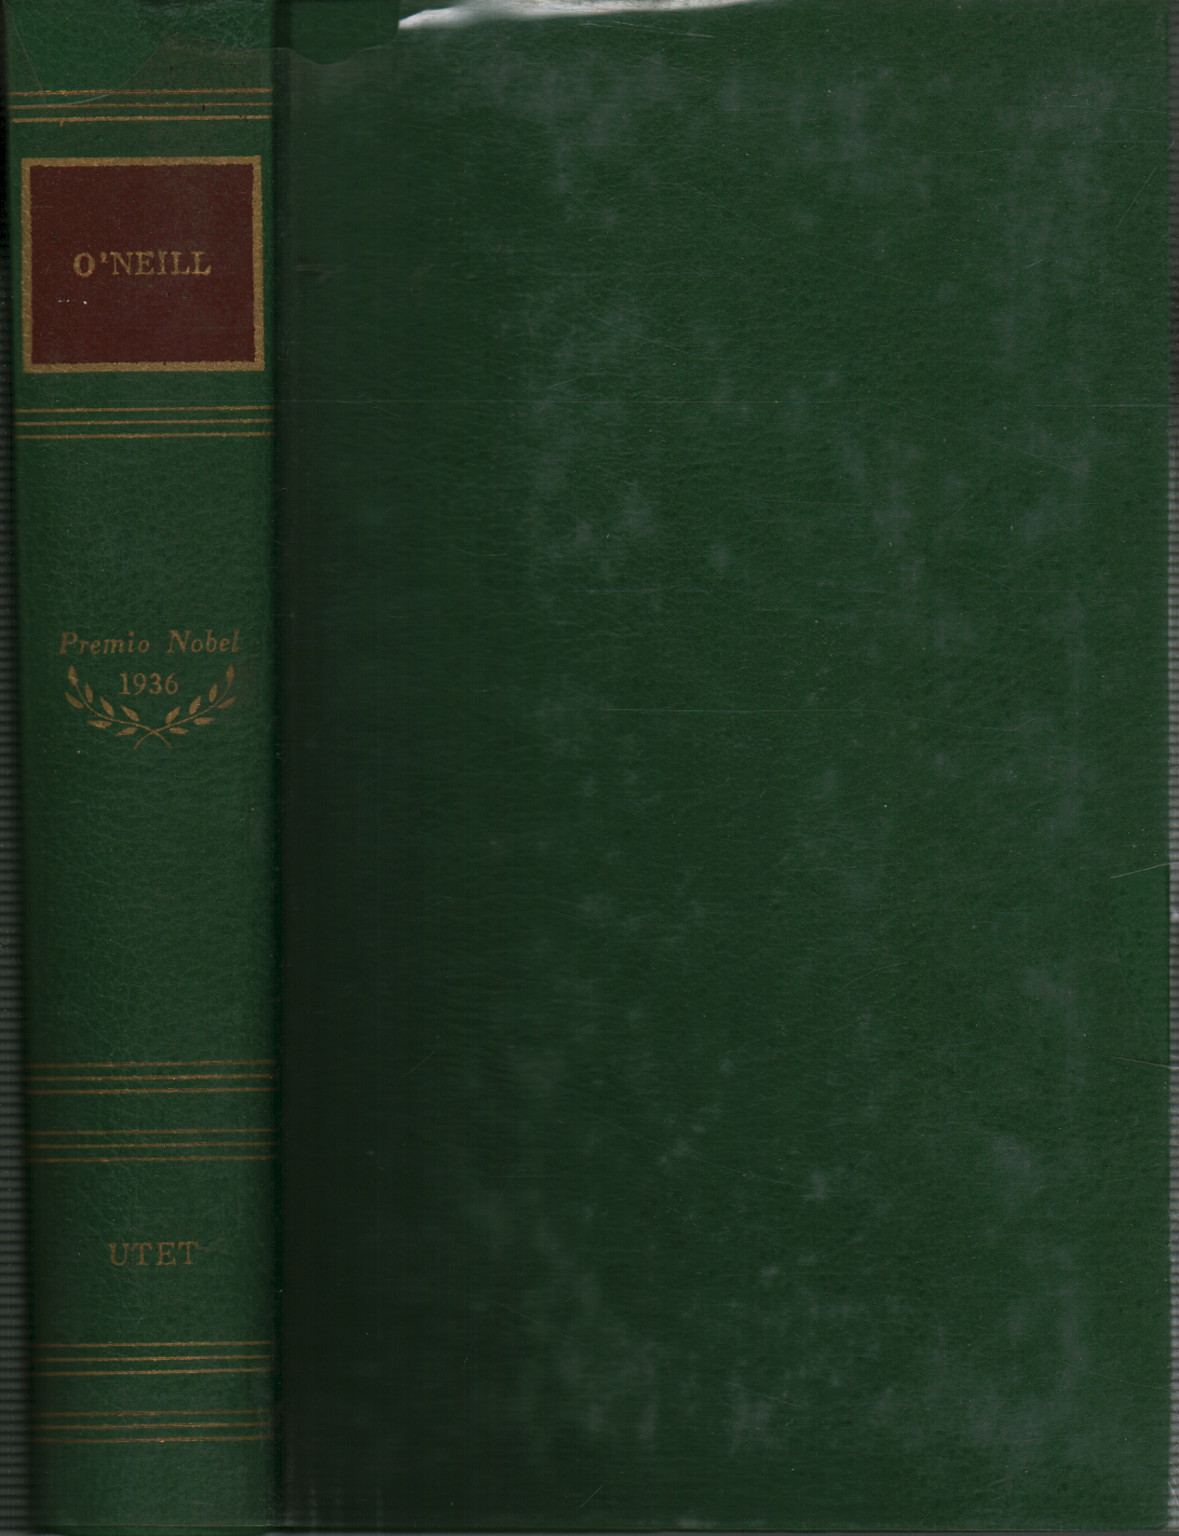 Le opere di Eugene O'Neill, s.a.